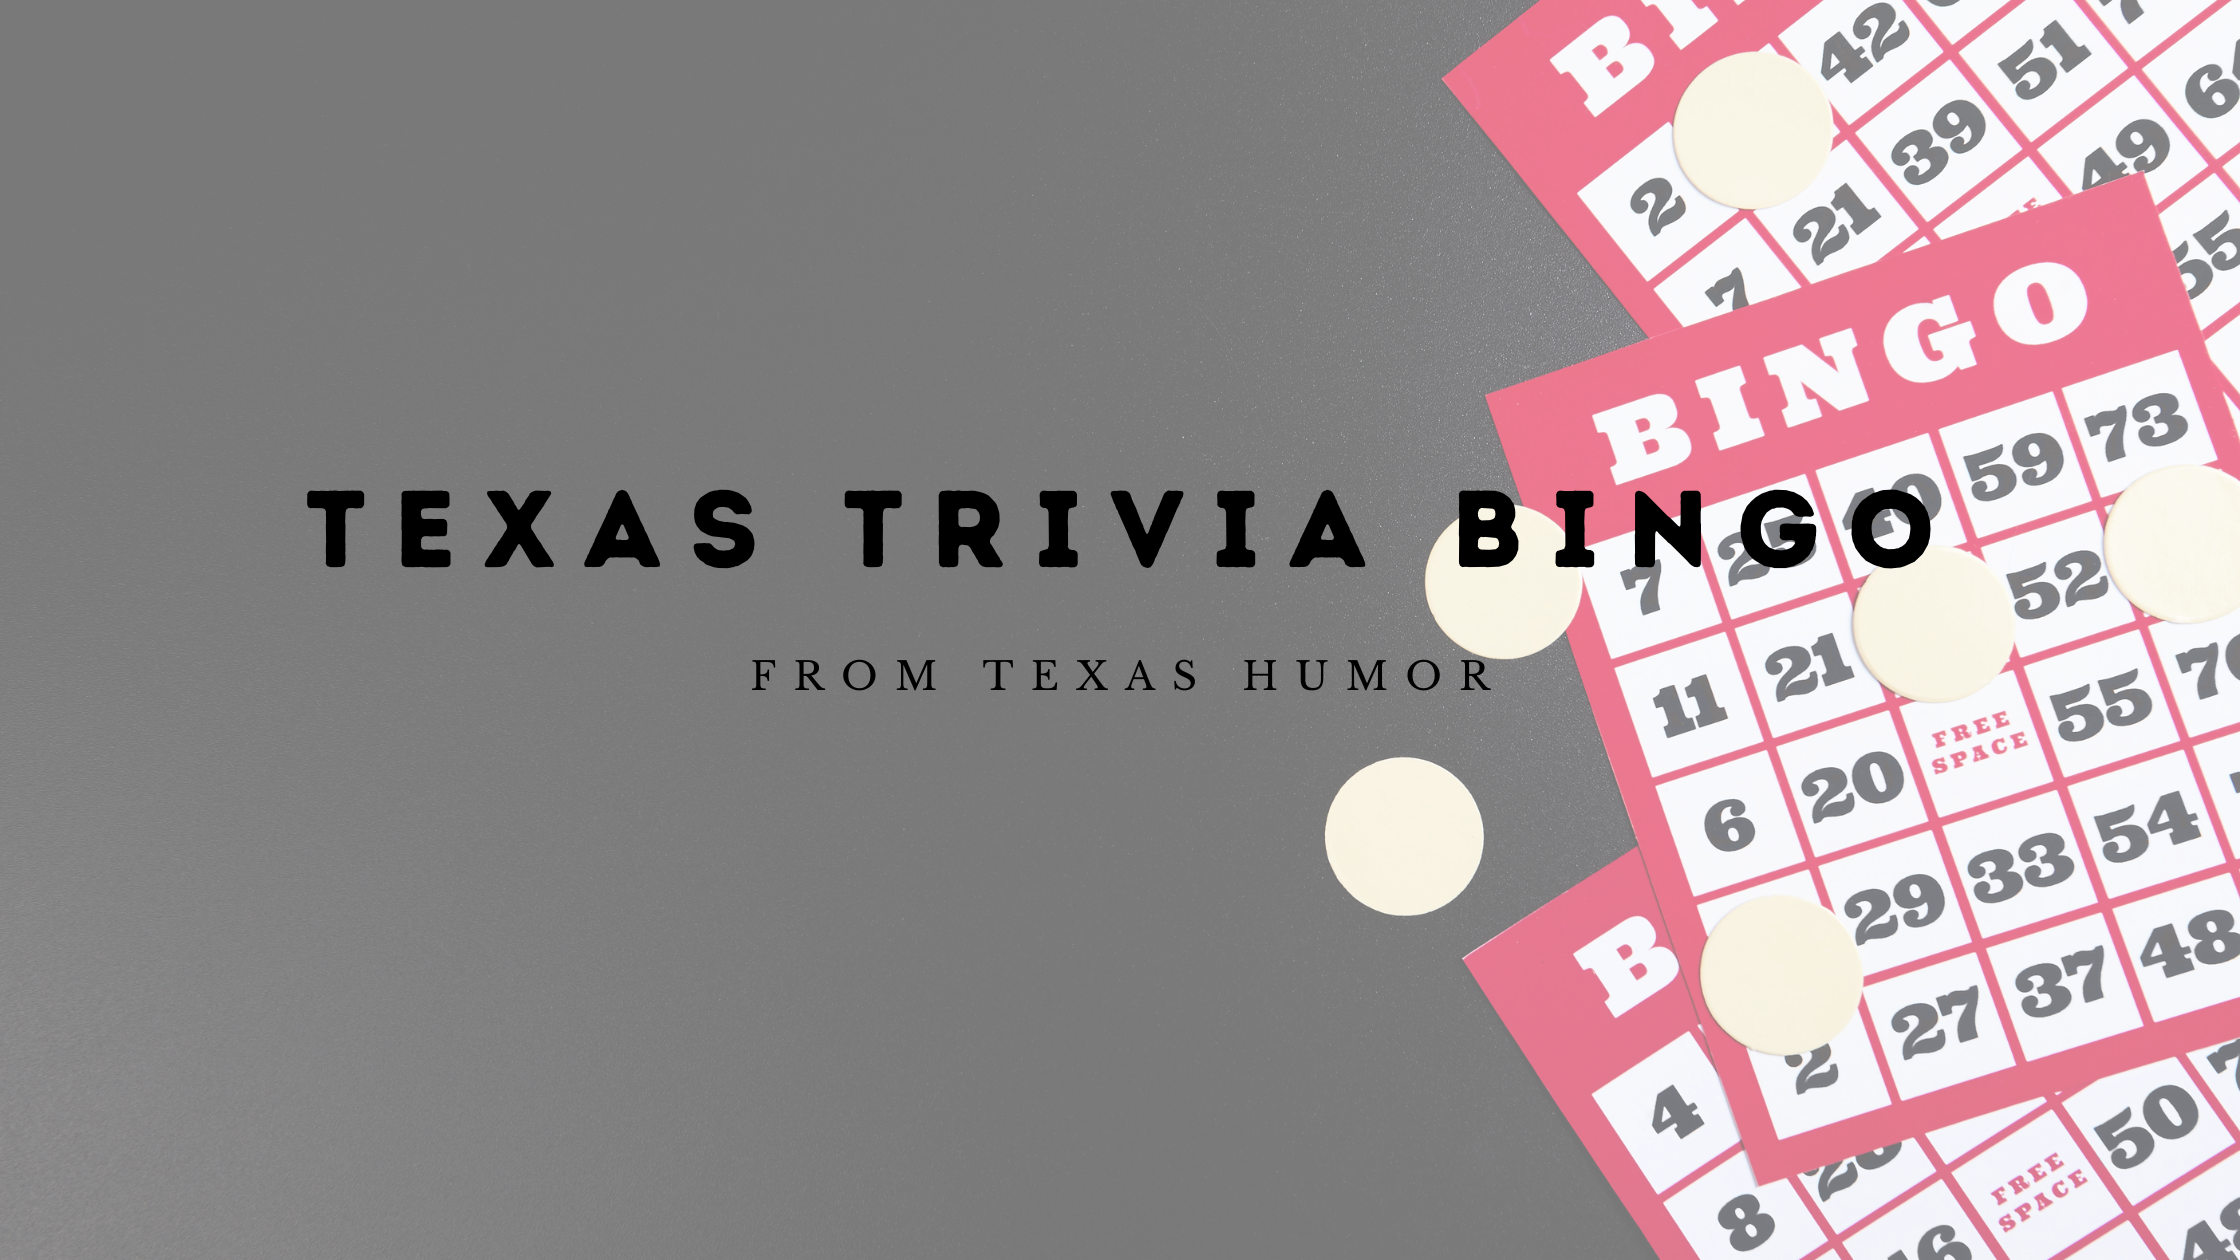 Texas Trivia Bingo